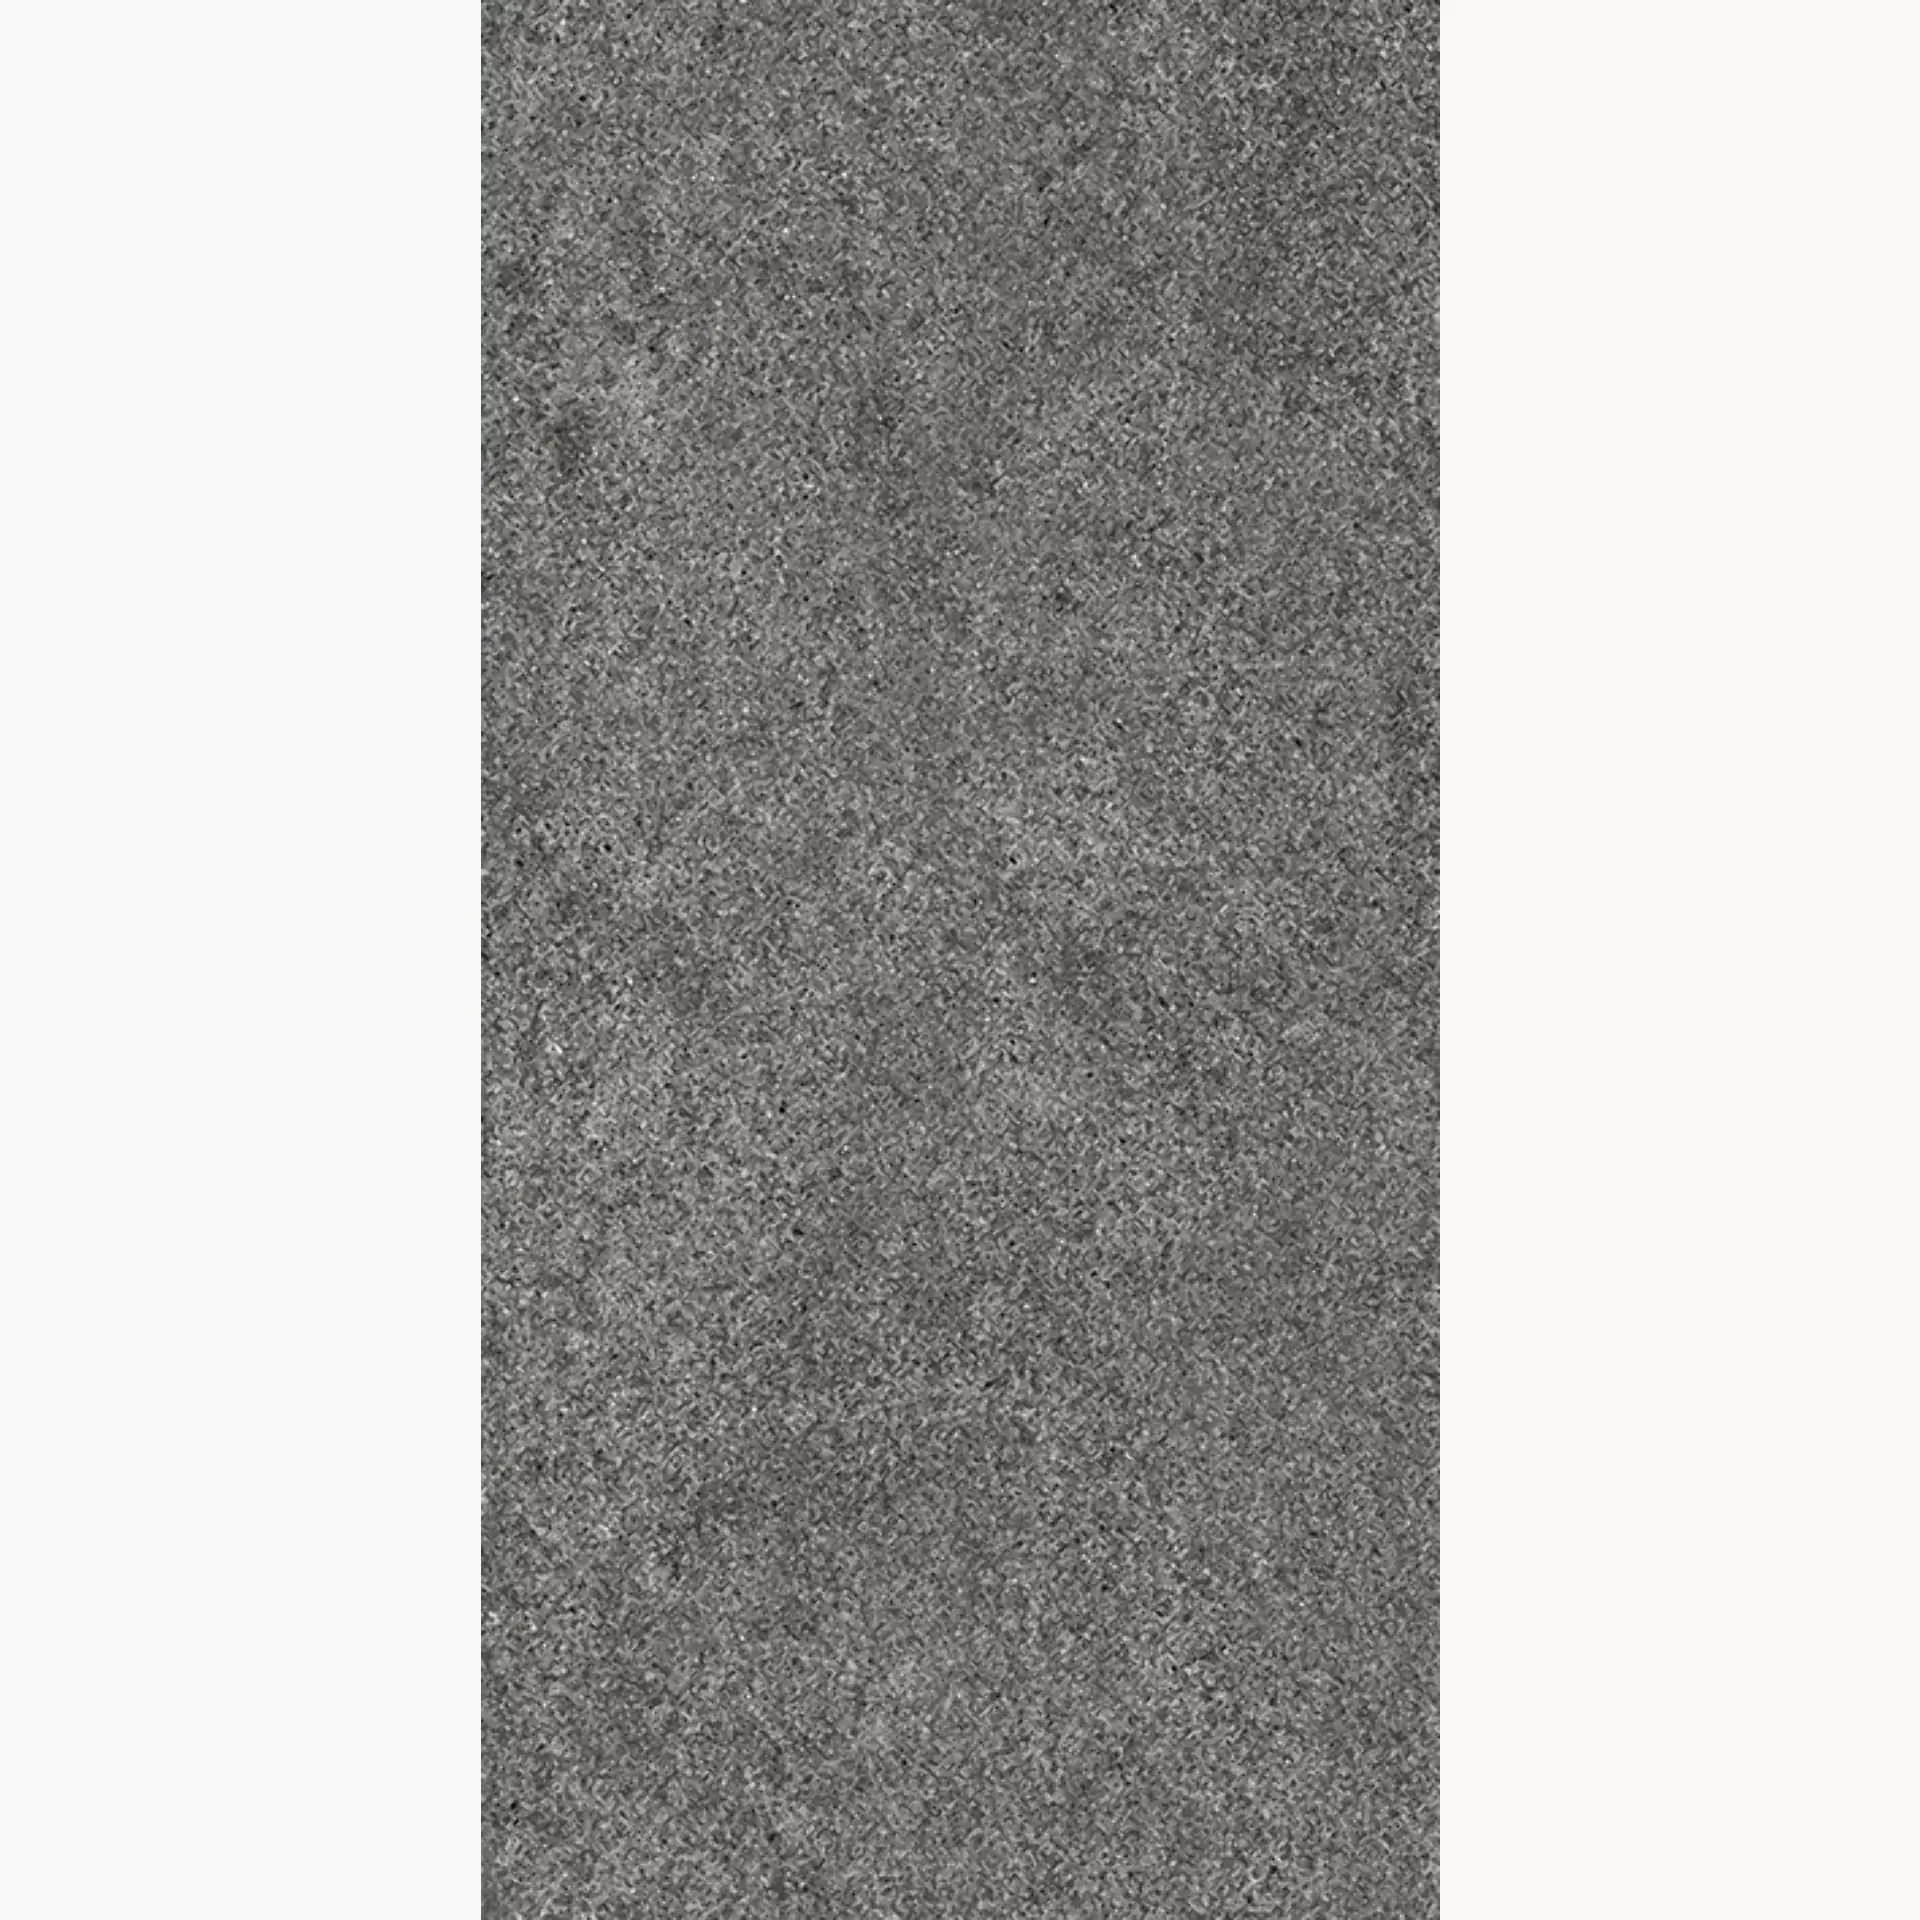 Wandfliese,Bodenfliese Villeroy & Boch Solid Tones Dark Stone Matt Dark Stone 2685-PS62 matt 30x60cm rektifiziert 10mm